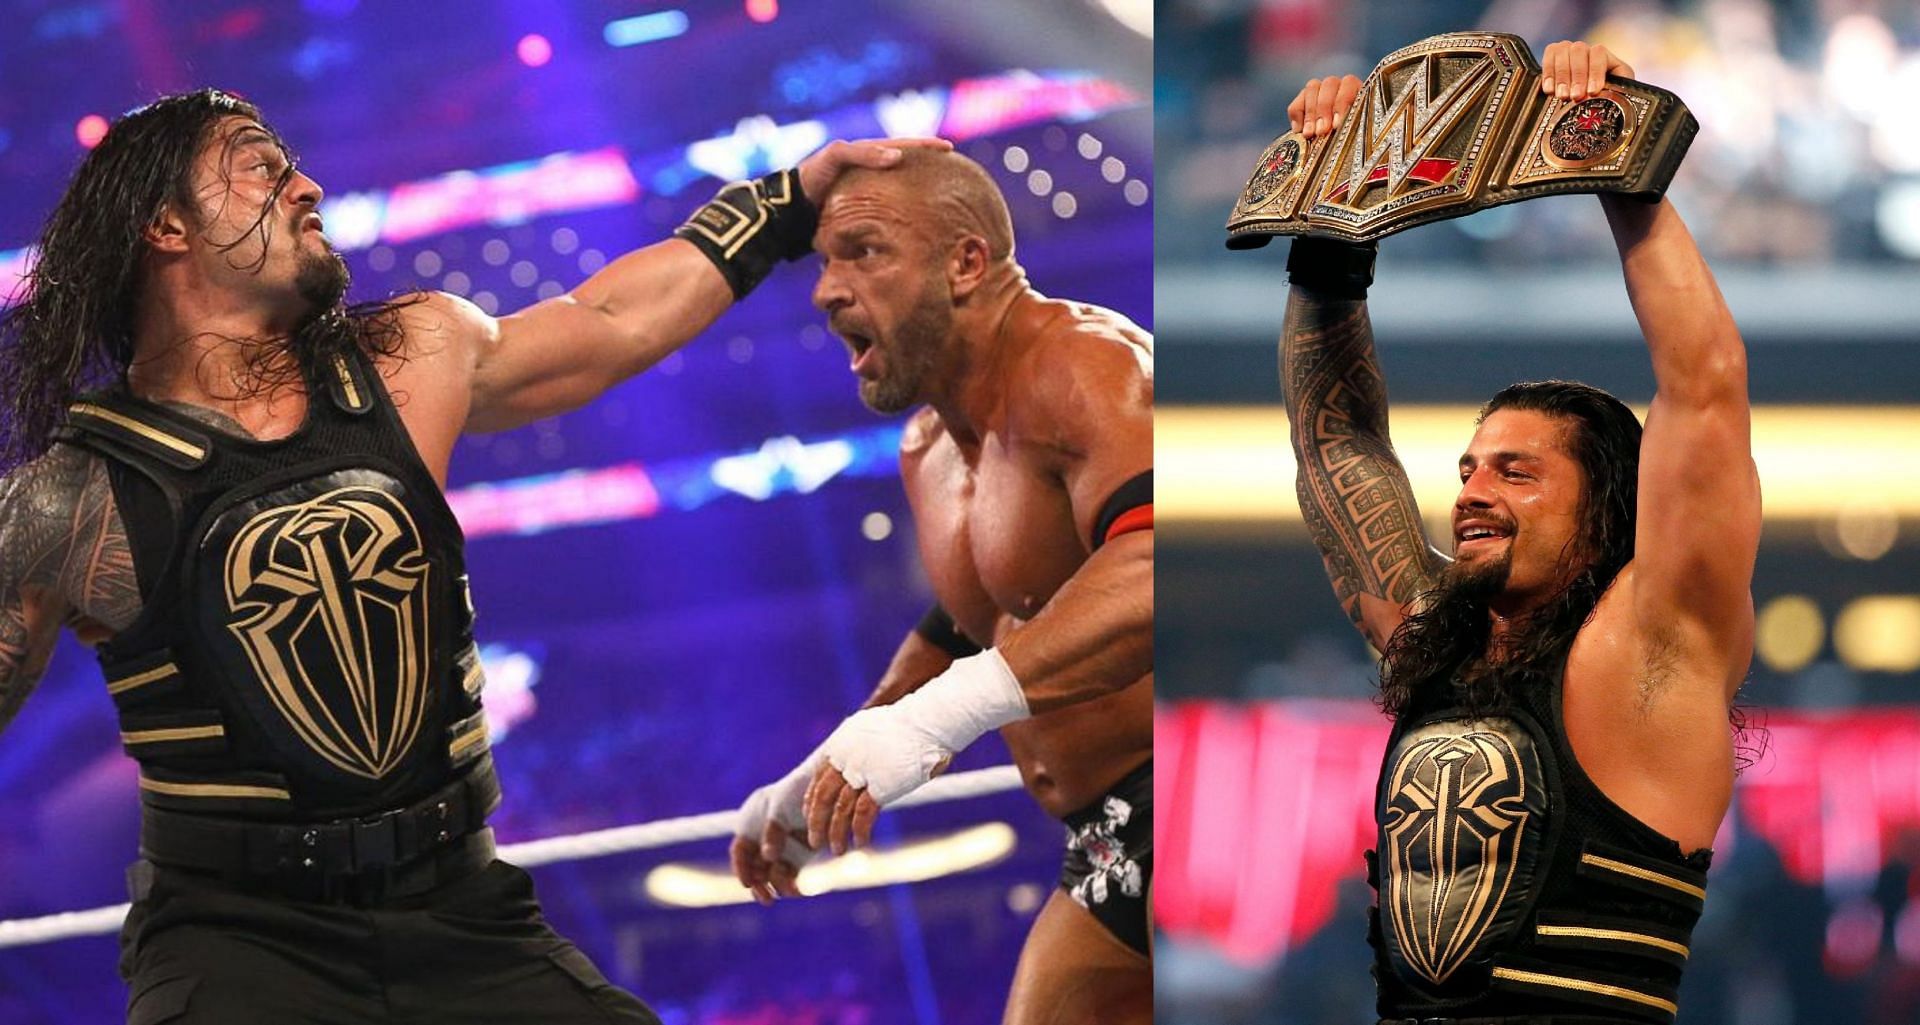 WWE WrestleMania 32 में रोमन रेंस और ट्रिपल एच के बीच वर्ल्ड हैवीवेट चैंपियनशिप मैच देखने को मिला था 